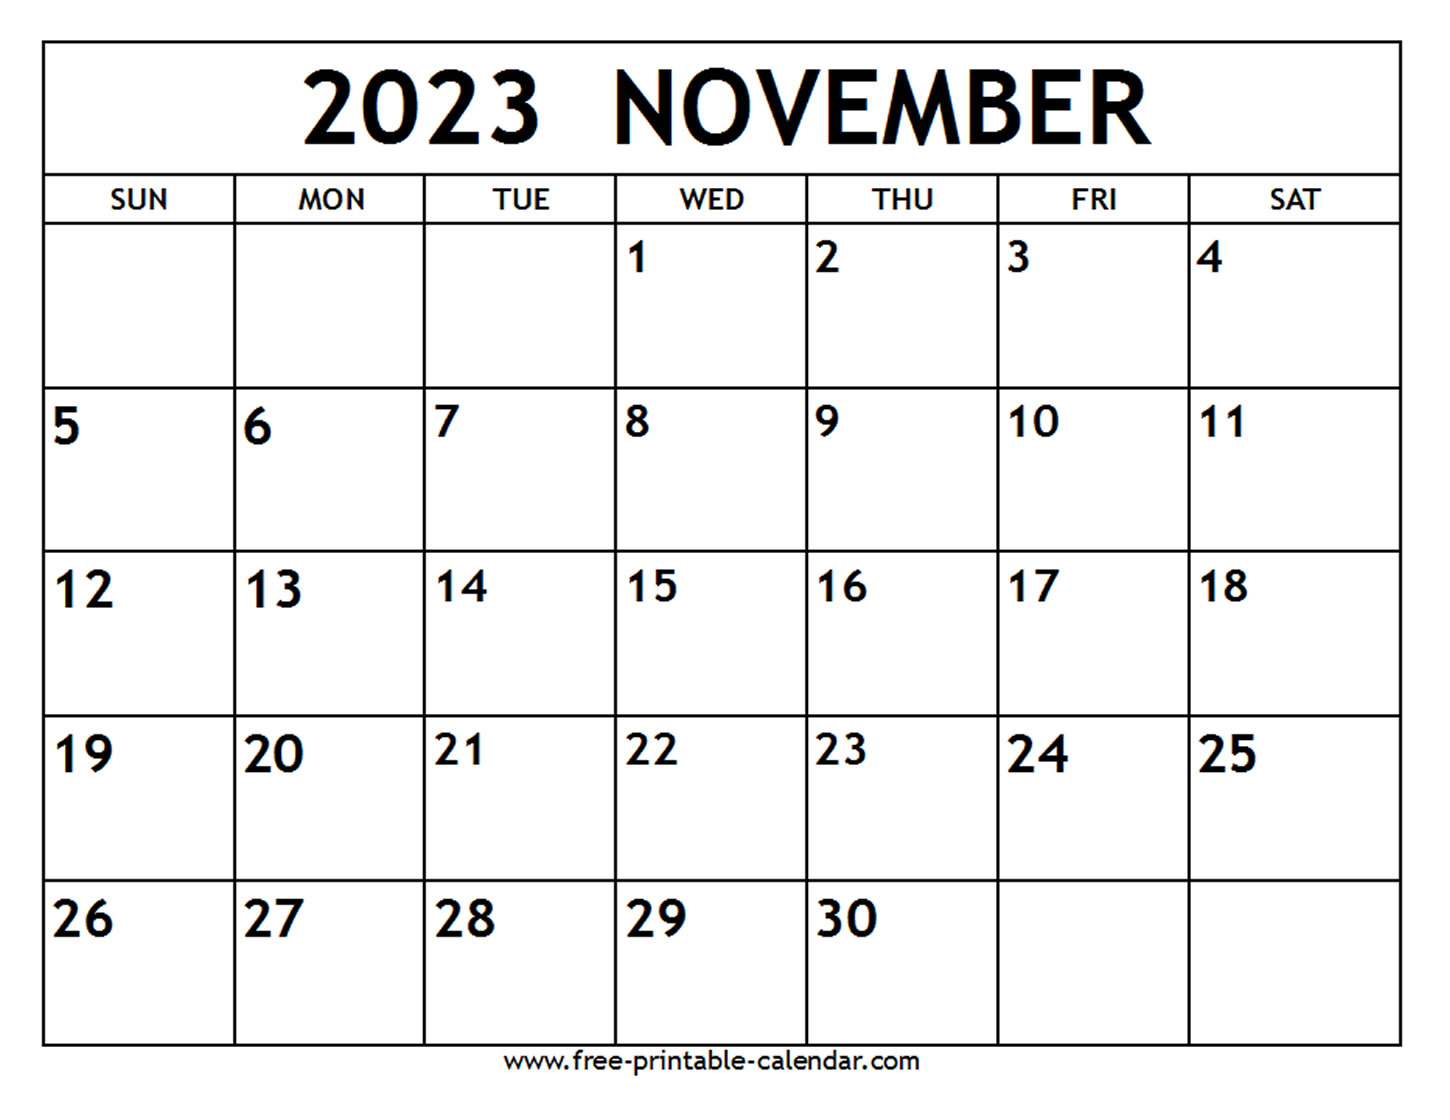 october-2023-calendar-template-november-2023-calendar-free-printable